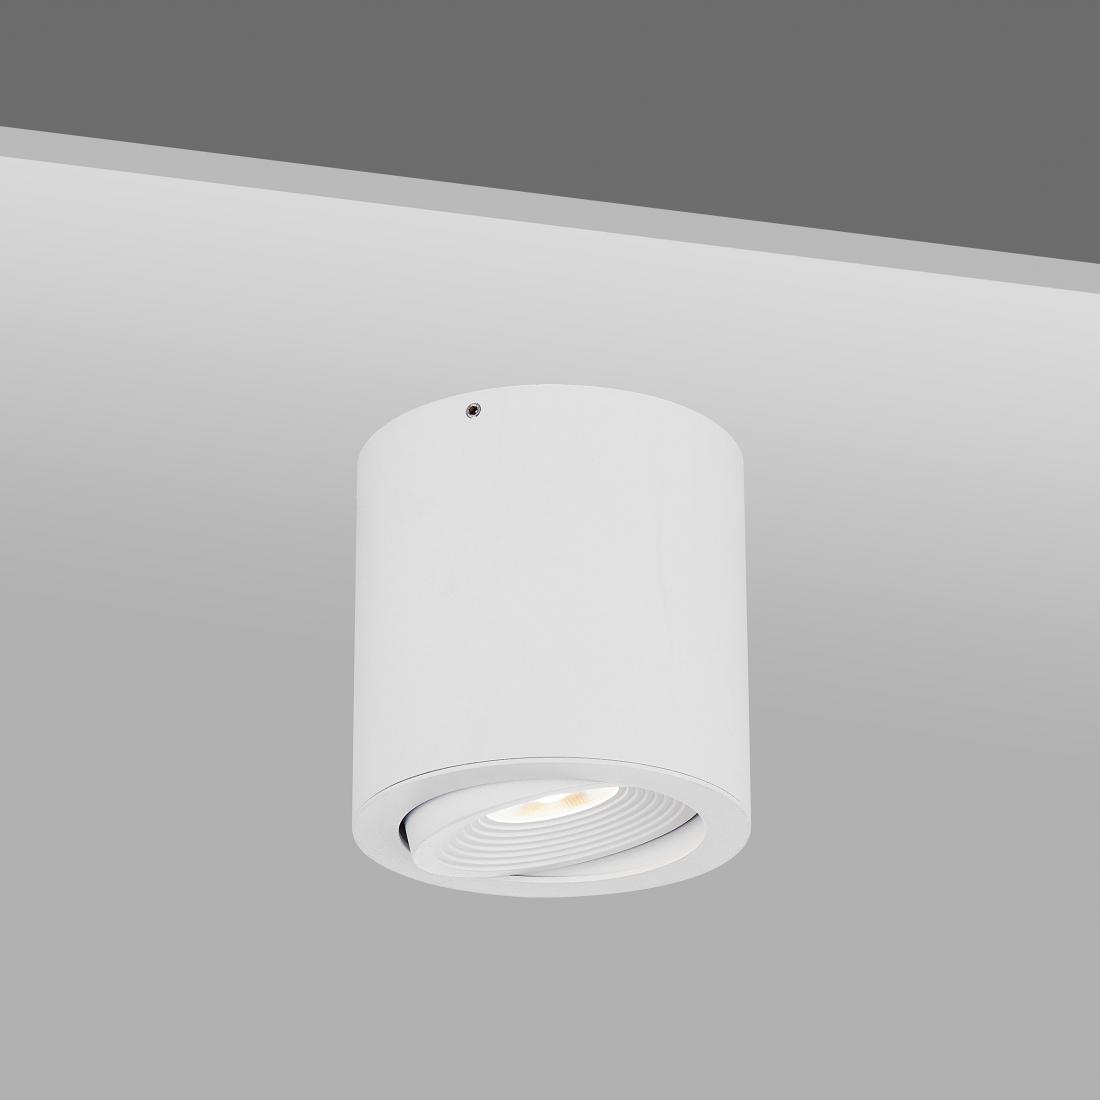 COB LED Ceiling light